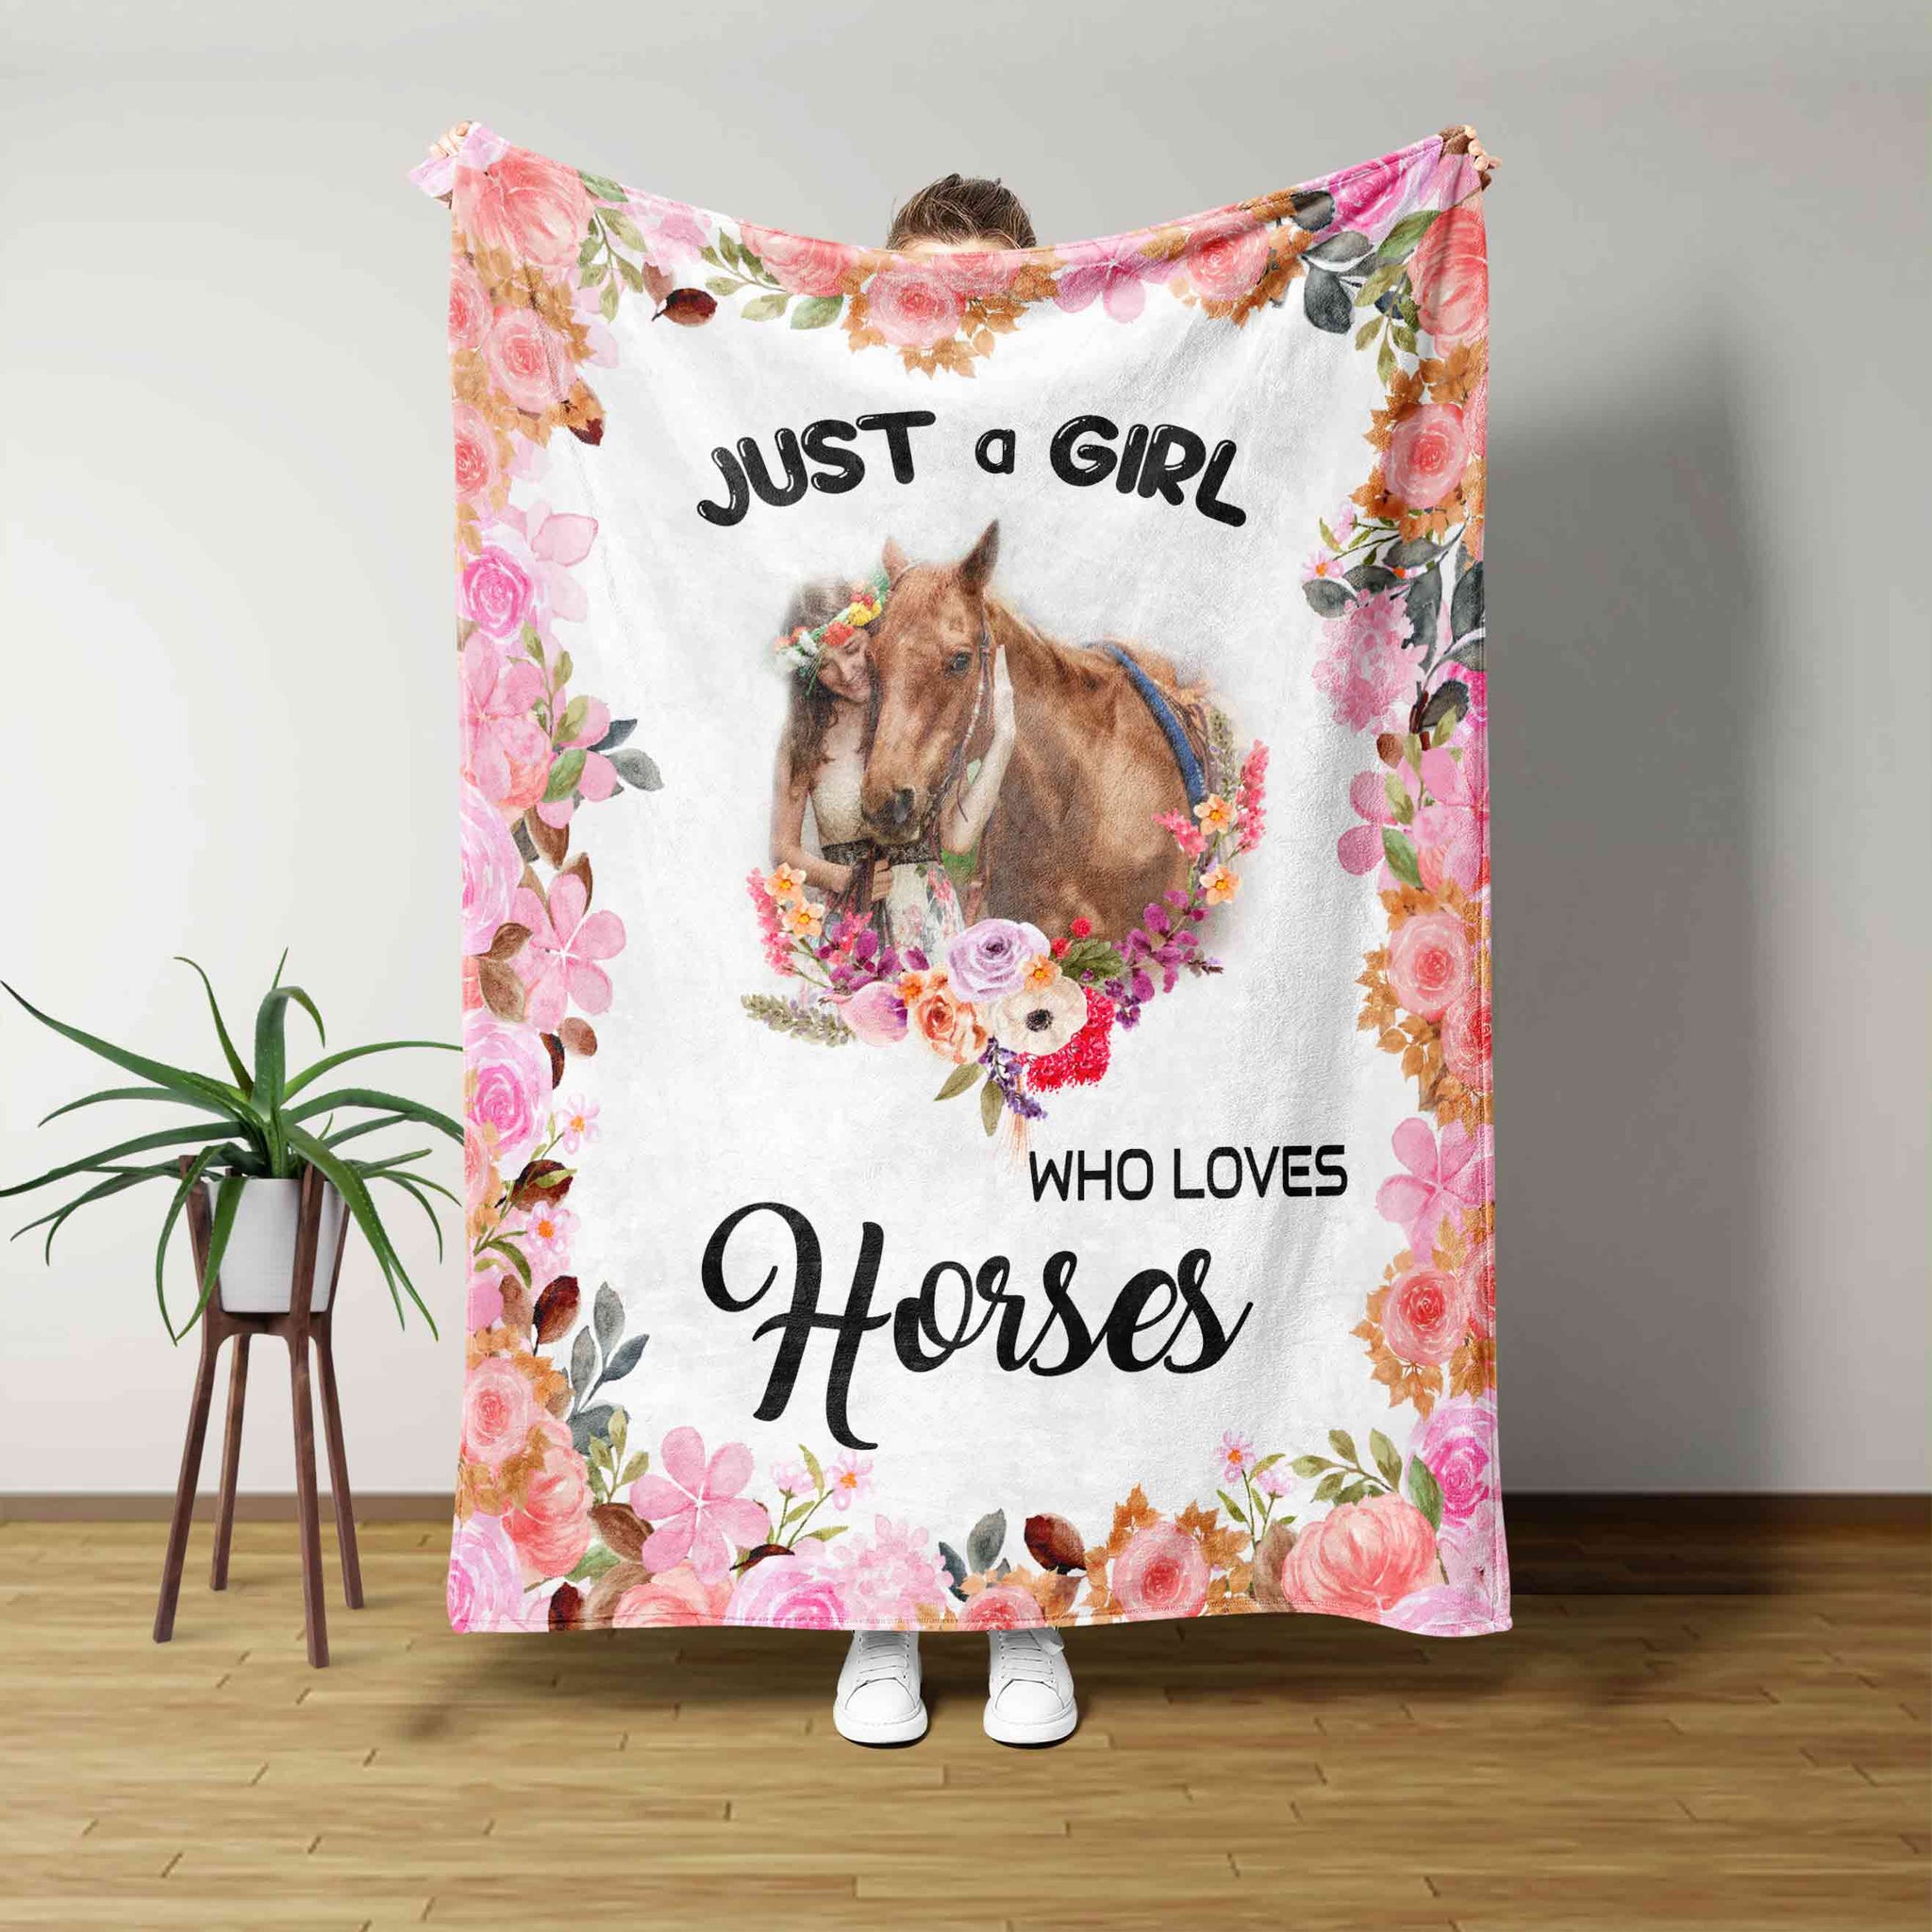 Just A Girl Who Loves Horses Blanket, Horse Blanket, Loves Horses Blanket, Flower Blanket, Horse Blanket For Girl, Gift For Horse Lovers